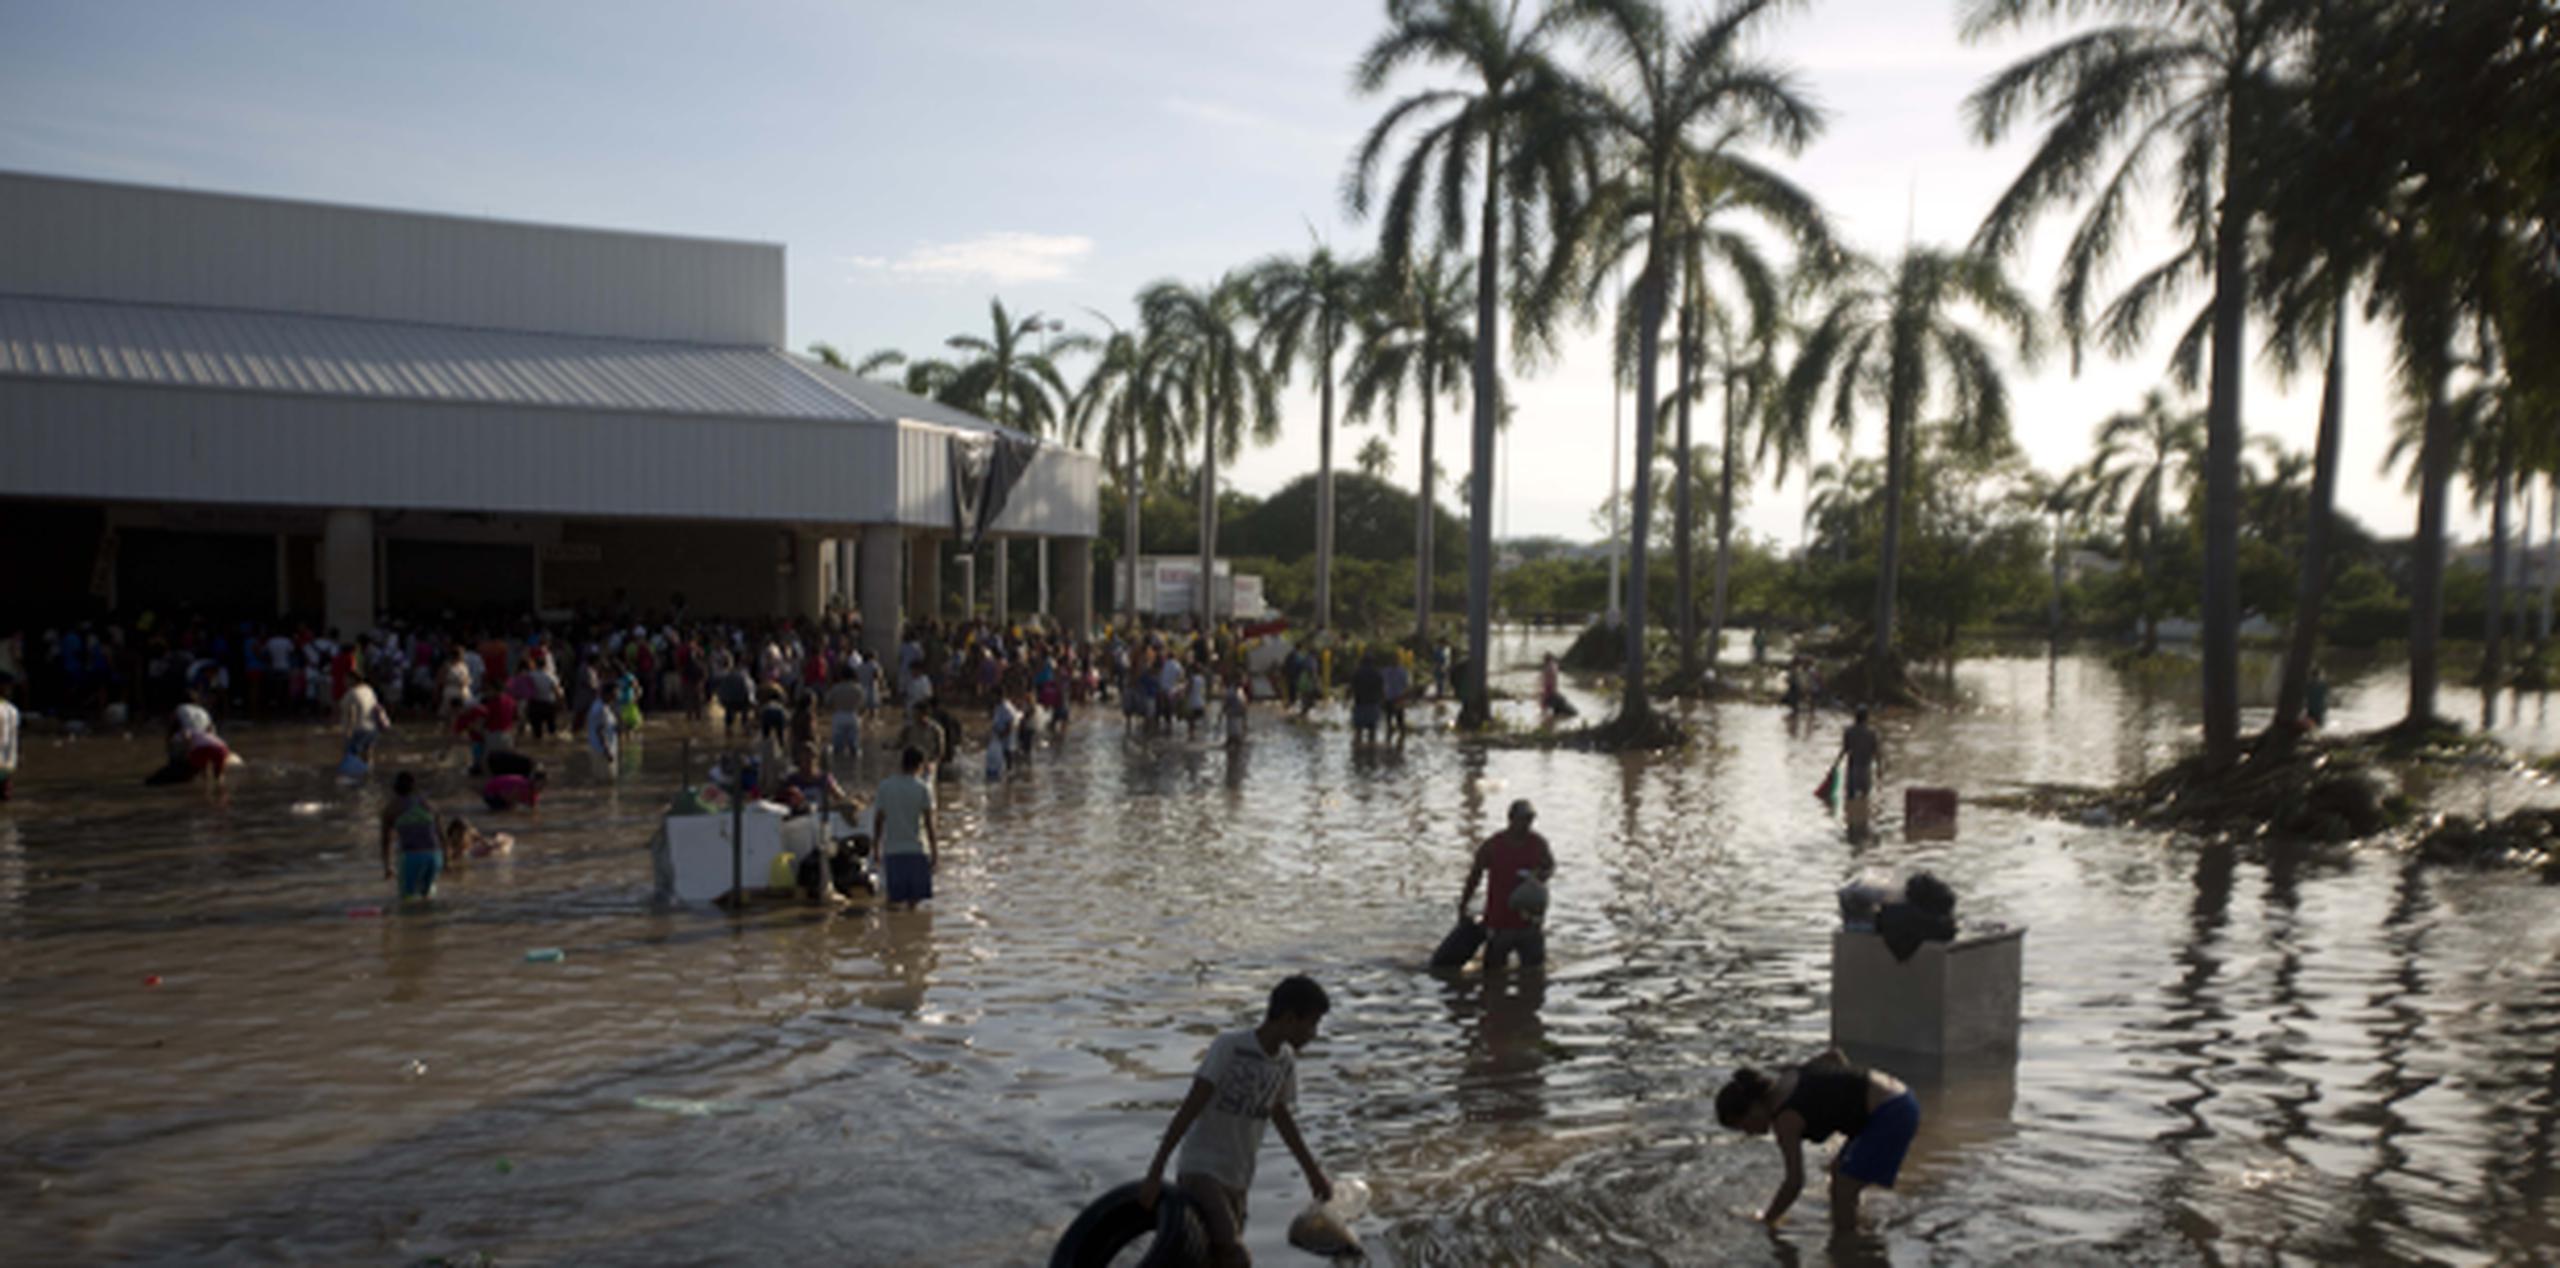 Cientos de personas caminaban entre las aguas estancadas del estacionamiento del almacén en busca de cualquier cosa. (AP/Eduardo Verdugo)